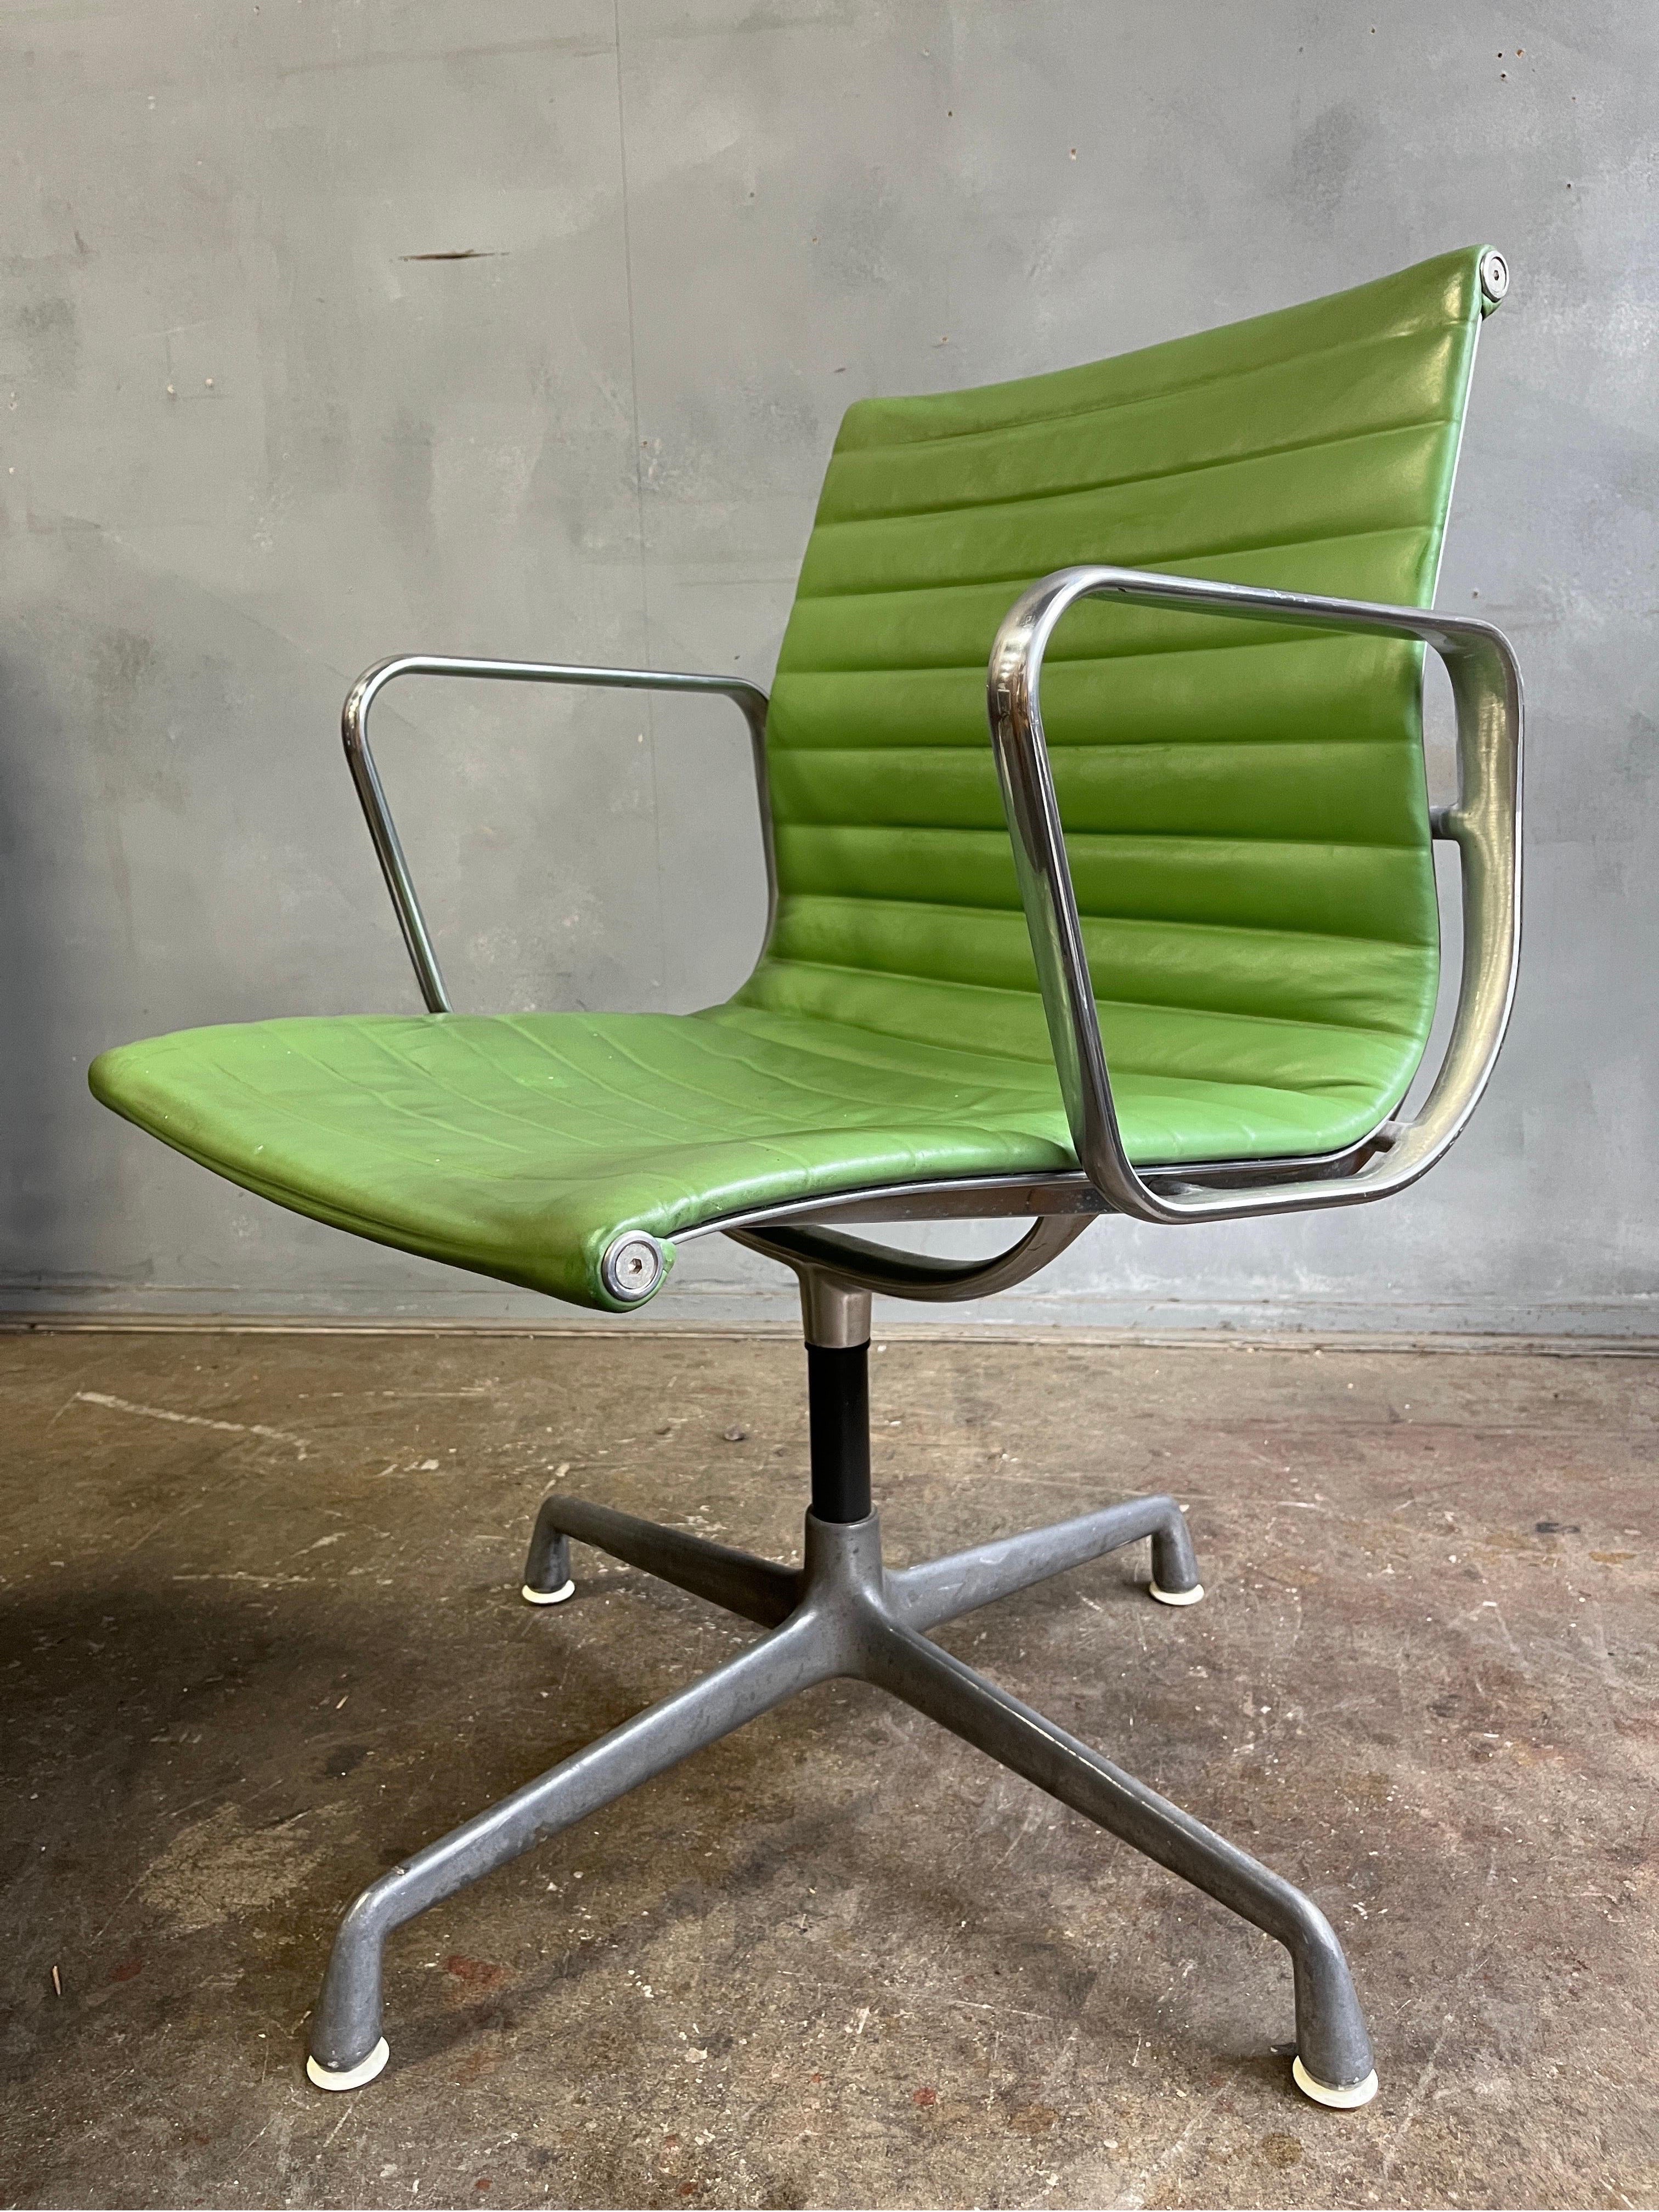 Chaise d'appoint Eames - EA330. L'Elegance et le confort séparent cette chaise emblématique des autres. Produit pour la première fois en 1958 et toujours en production, il s'agit de l'un des designs les plus recherchés et les plus intemporels. Cuir